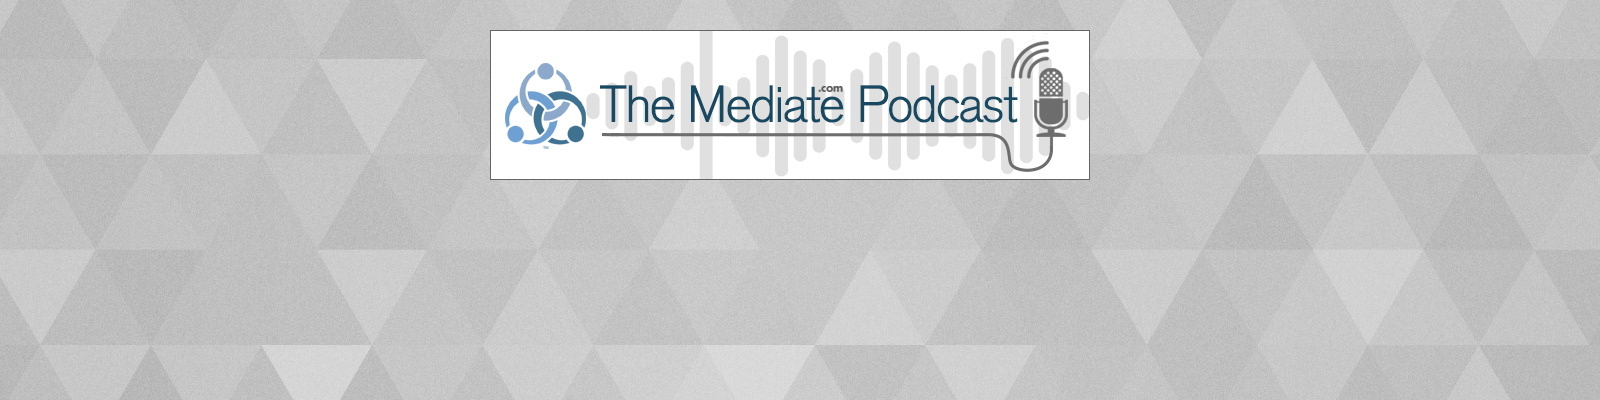 The Mediate.com Podcast